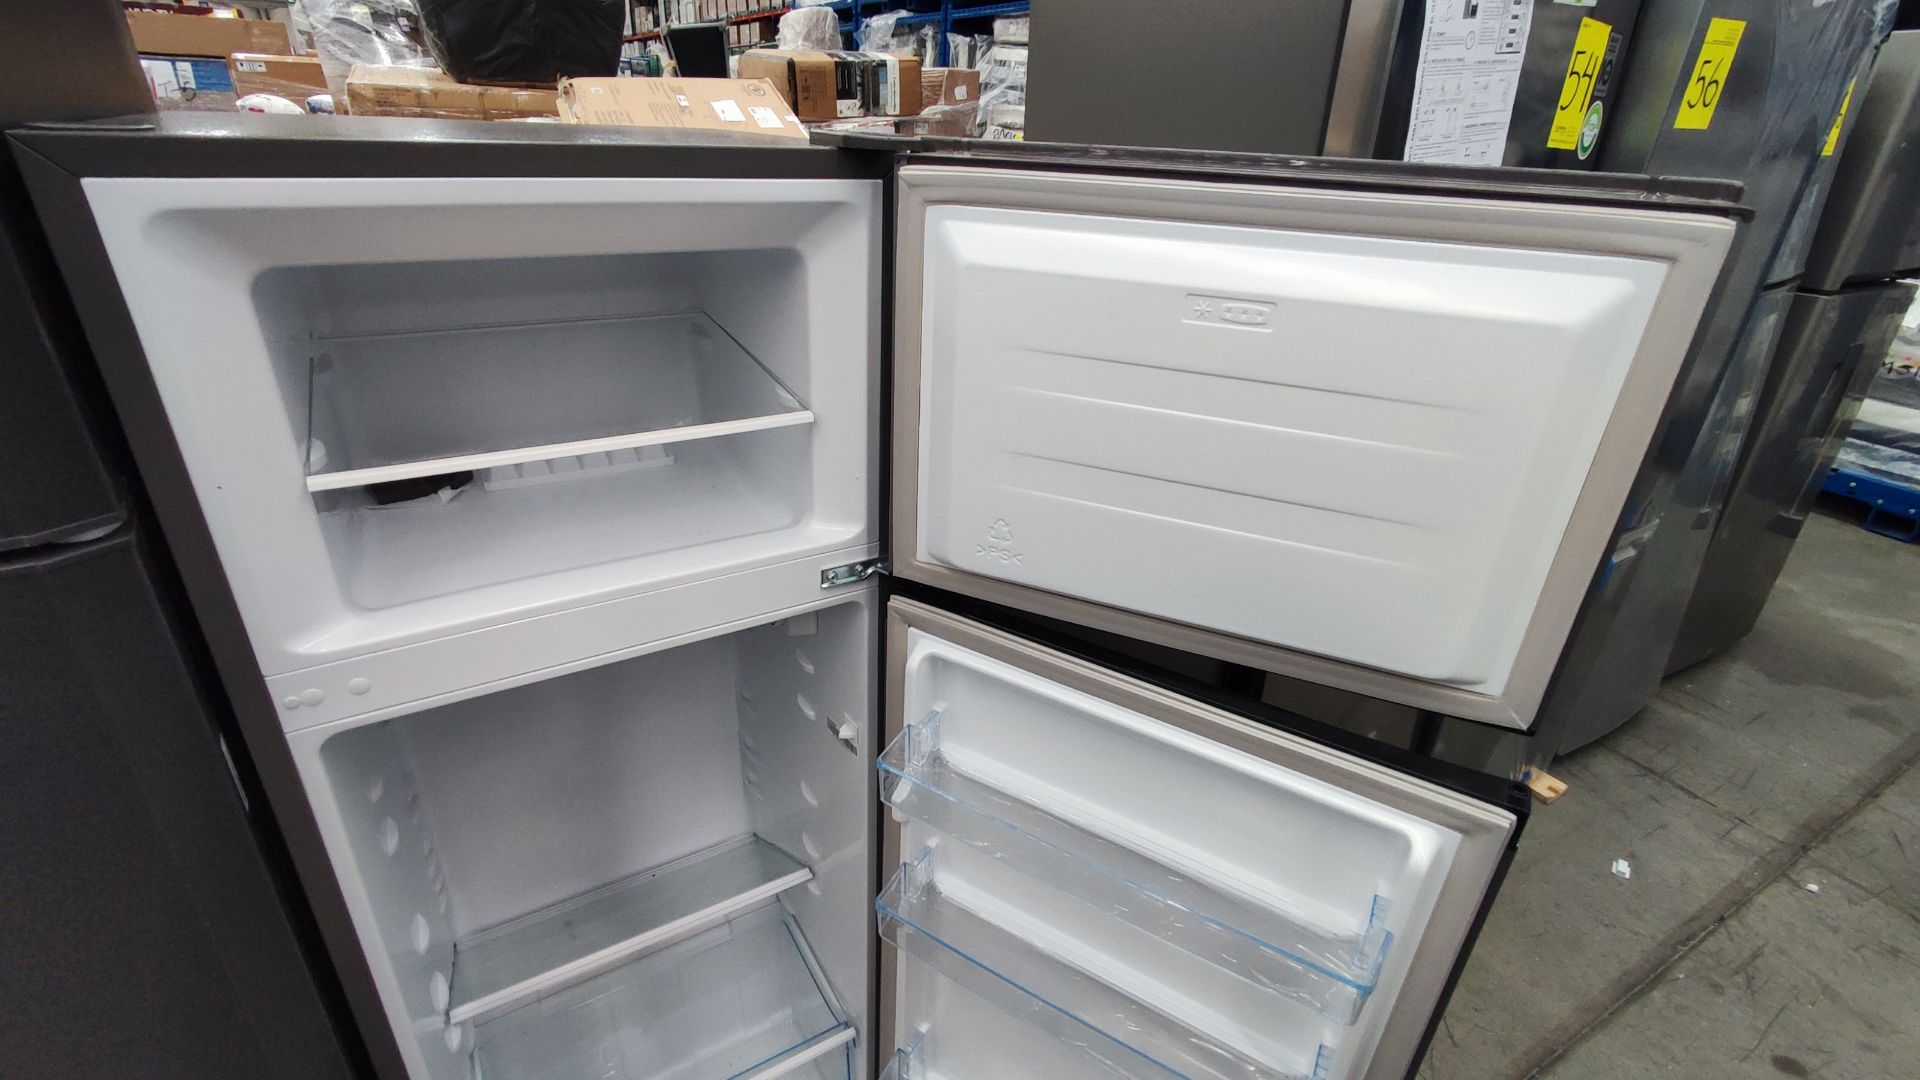 Lote de 2 Refrigeradores, Contiene; 1 Refrigerador Marca Hisense, Modelo BCYNY, Serie 1B0205Z0080JB - Image 5 of 11